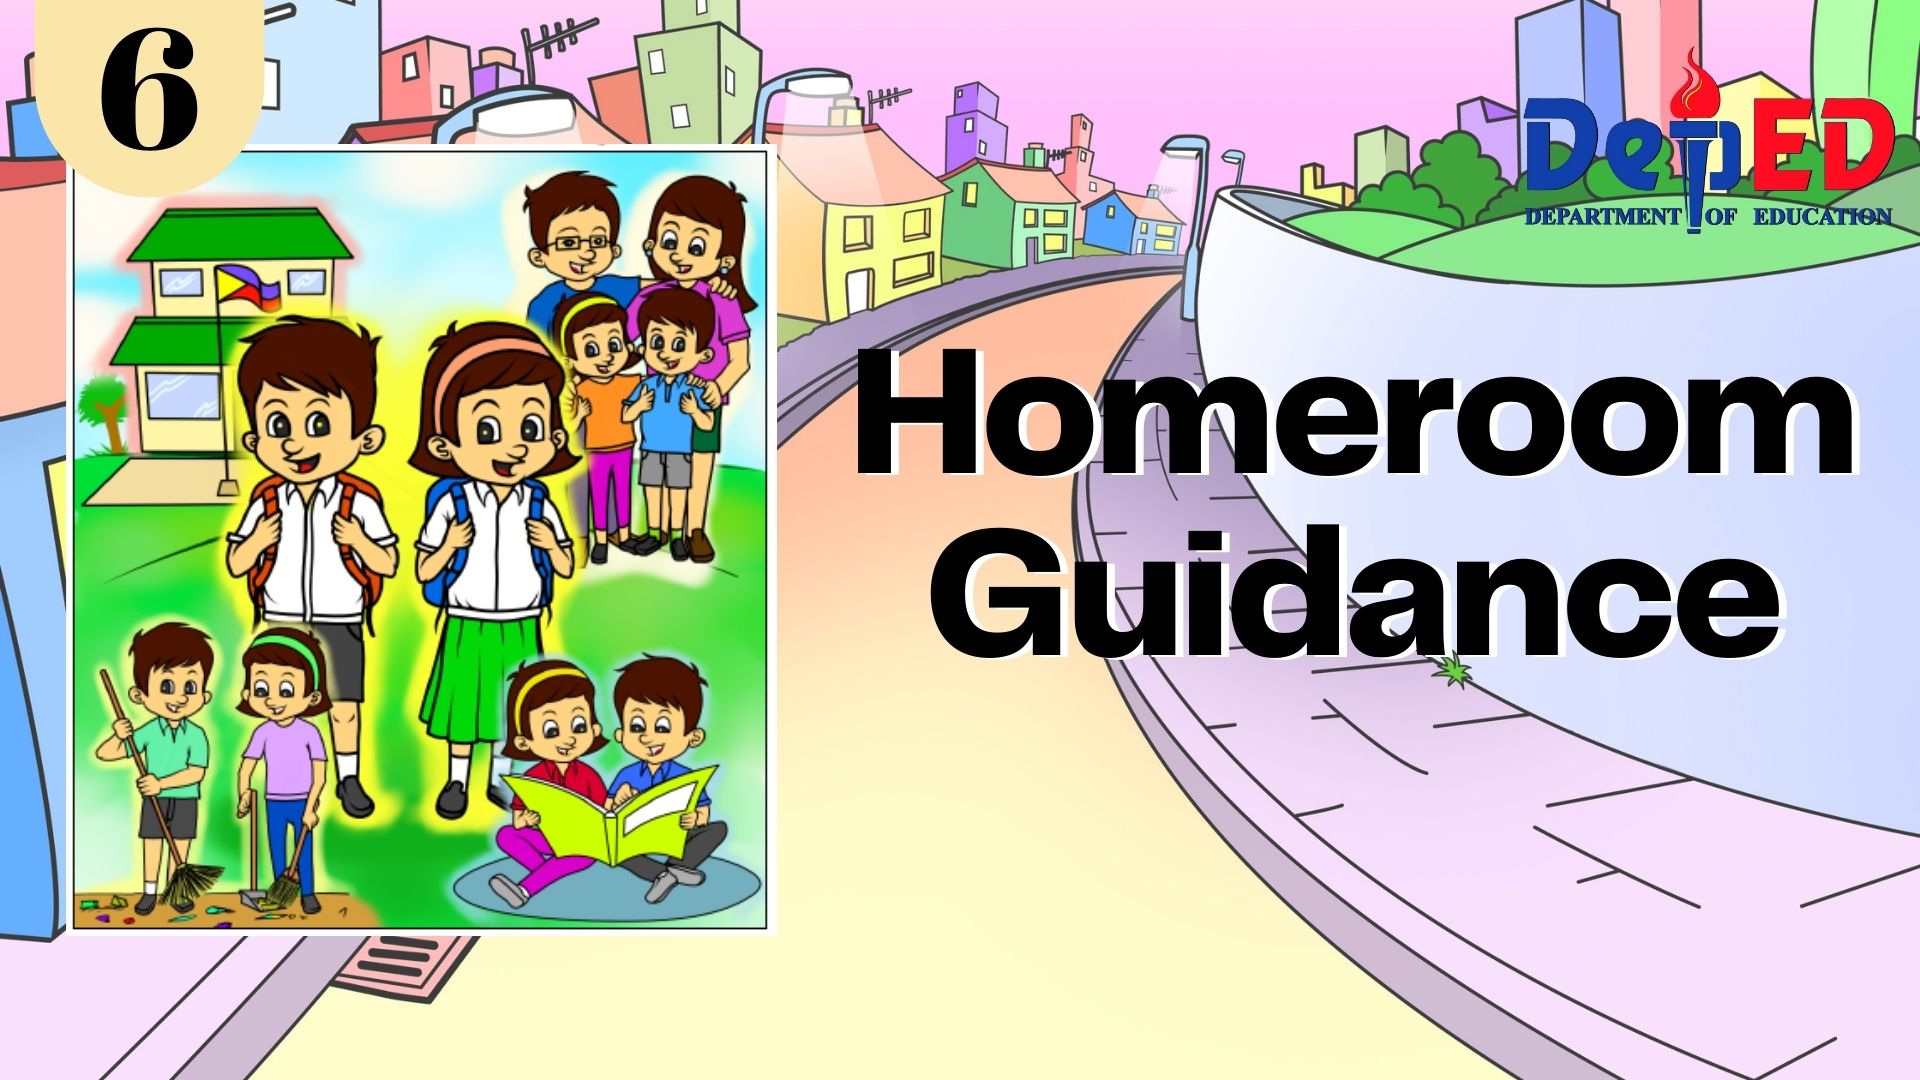 Quarter 2 Homeroom Guidance Grade 6 - ROSE